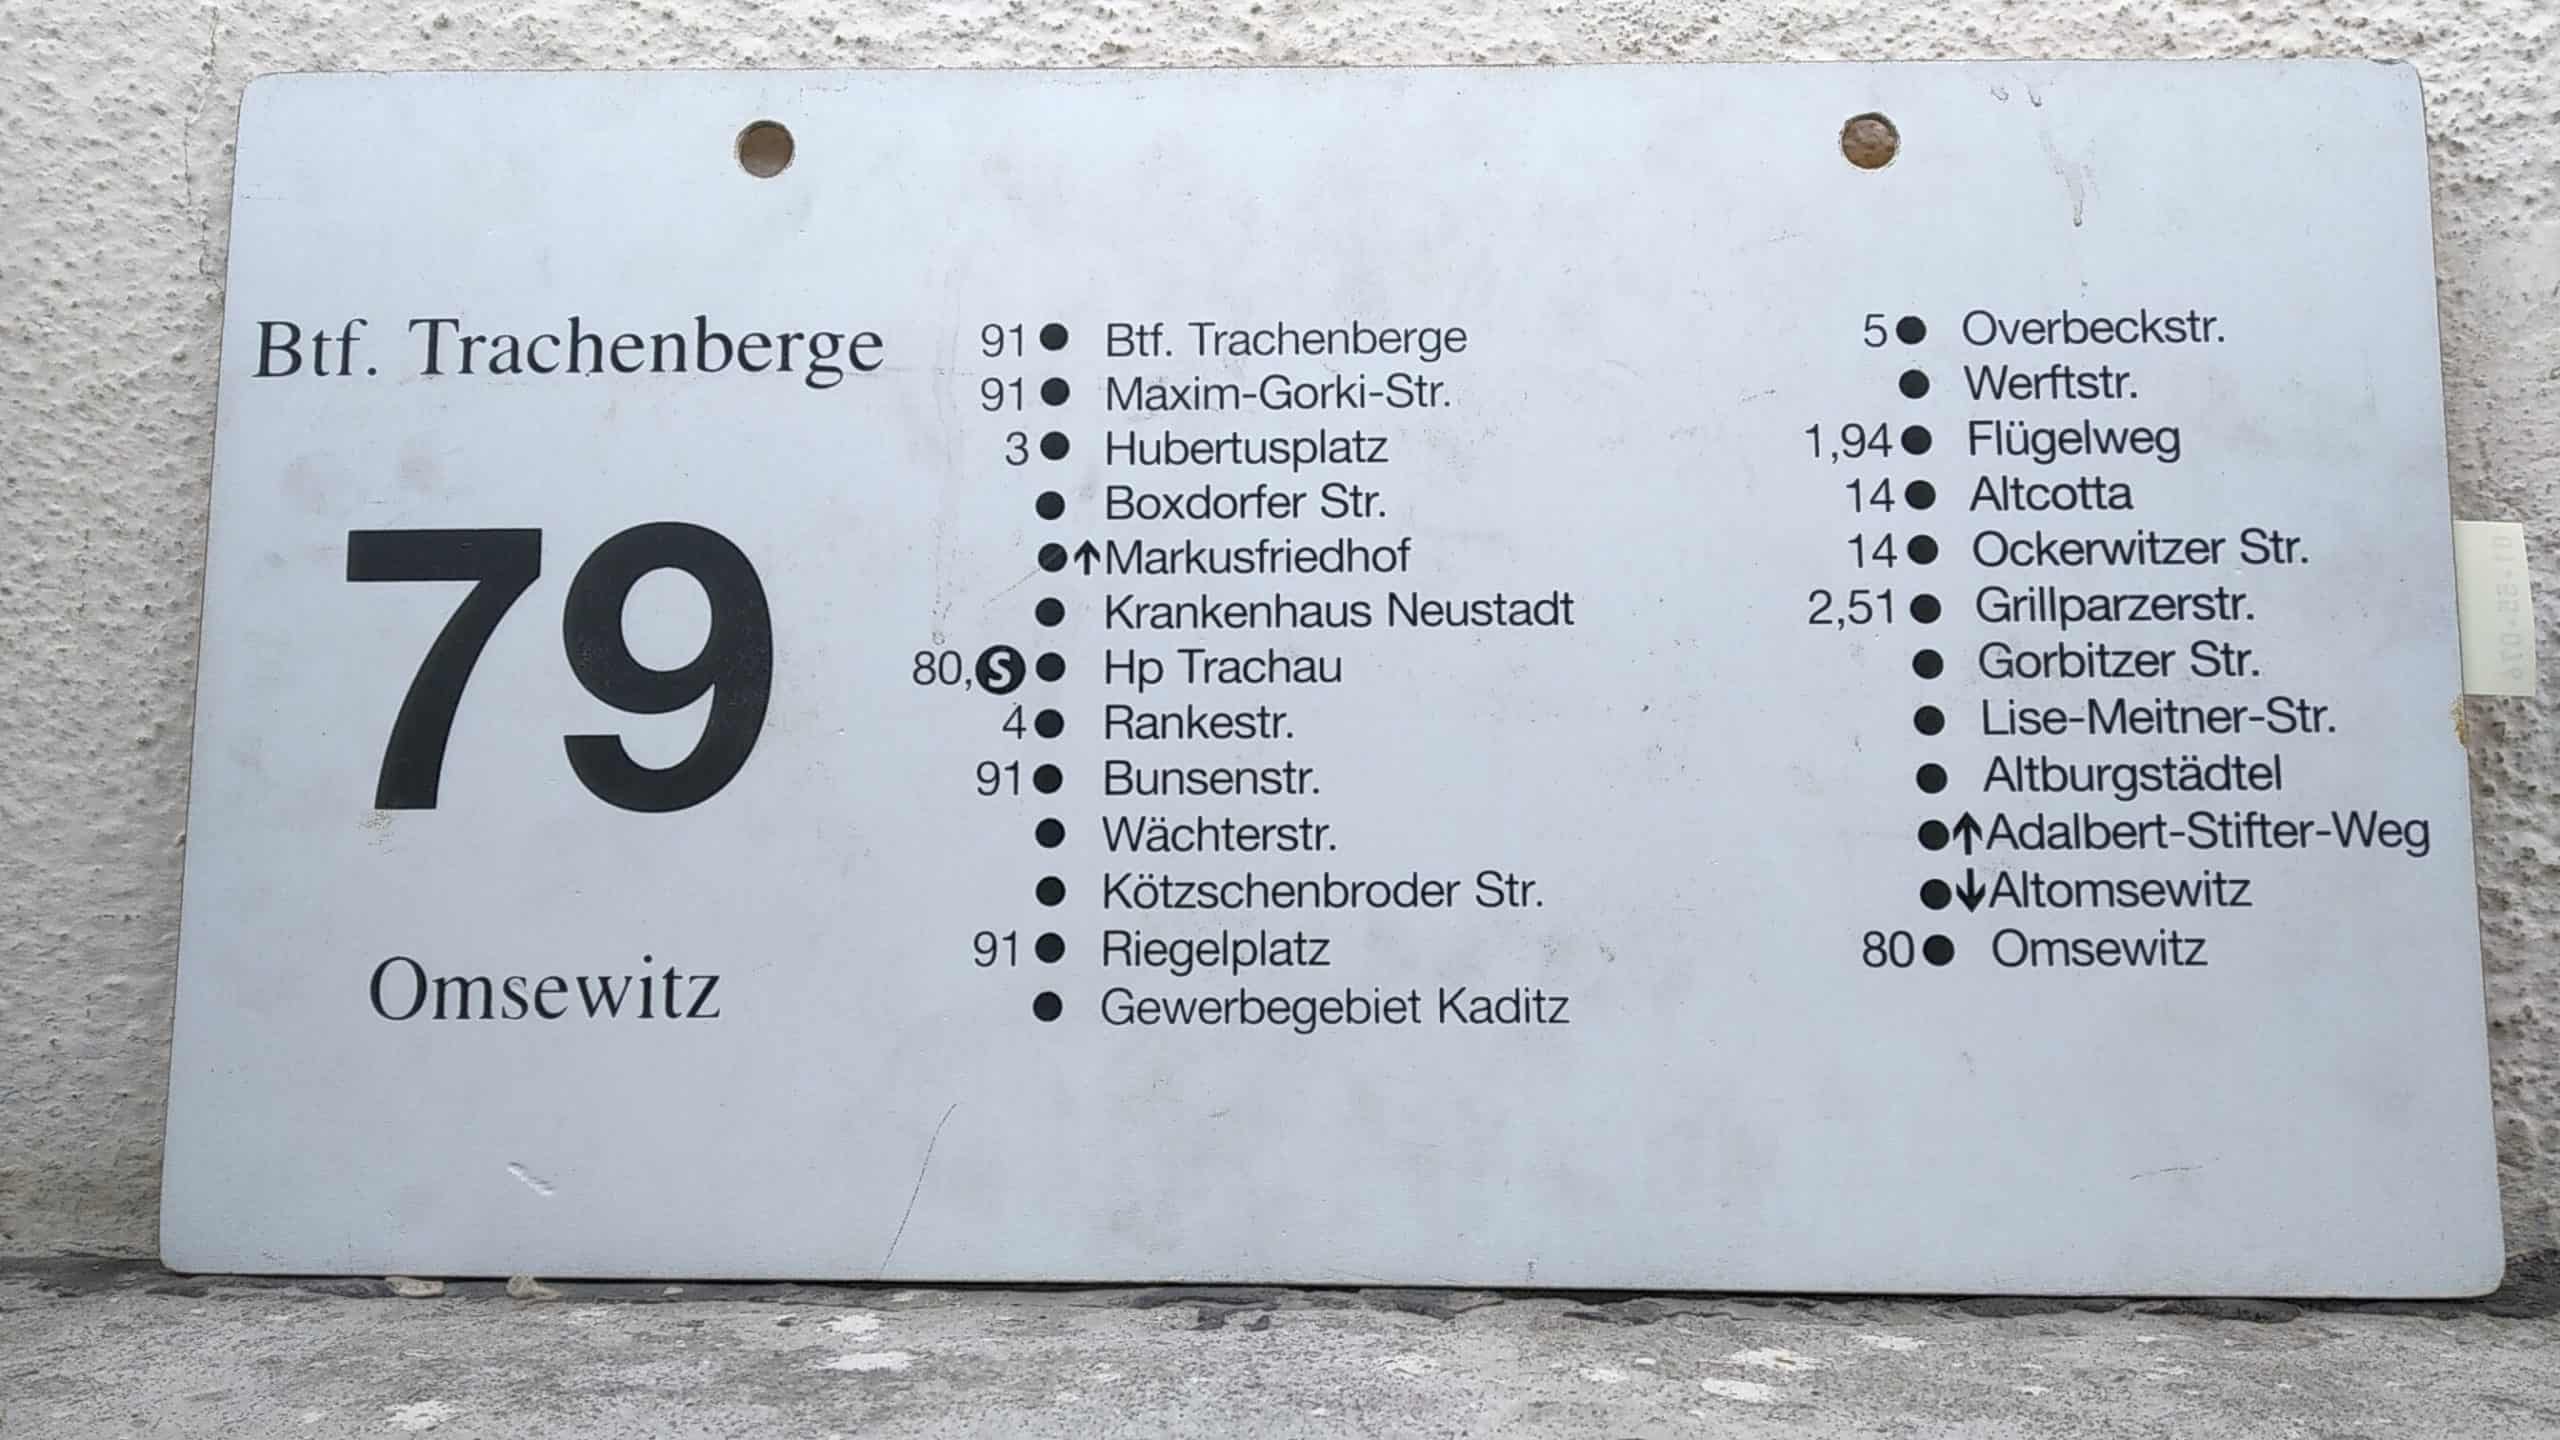 Ein seltenes Bus-Linienschild aus Dresden der Linie 79 von Btf. Trachenberge nach Omsewitz #2